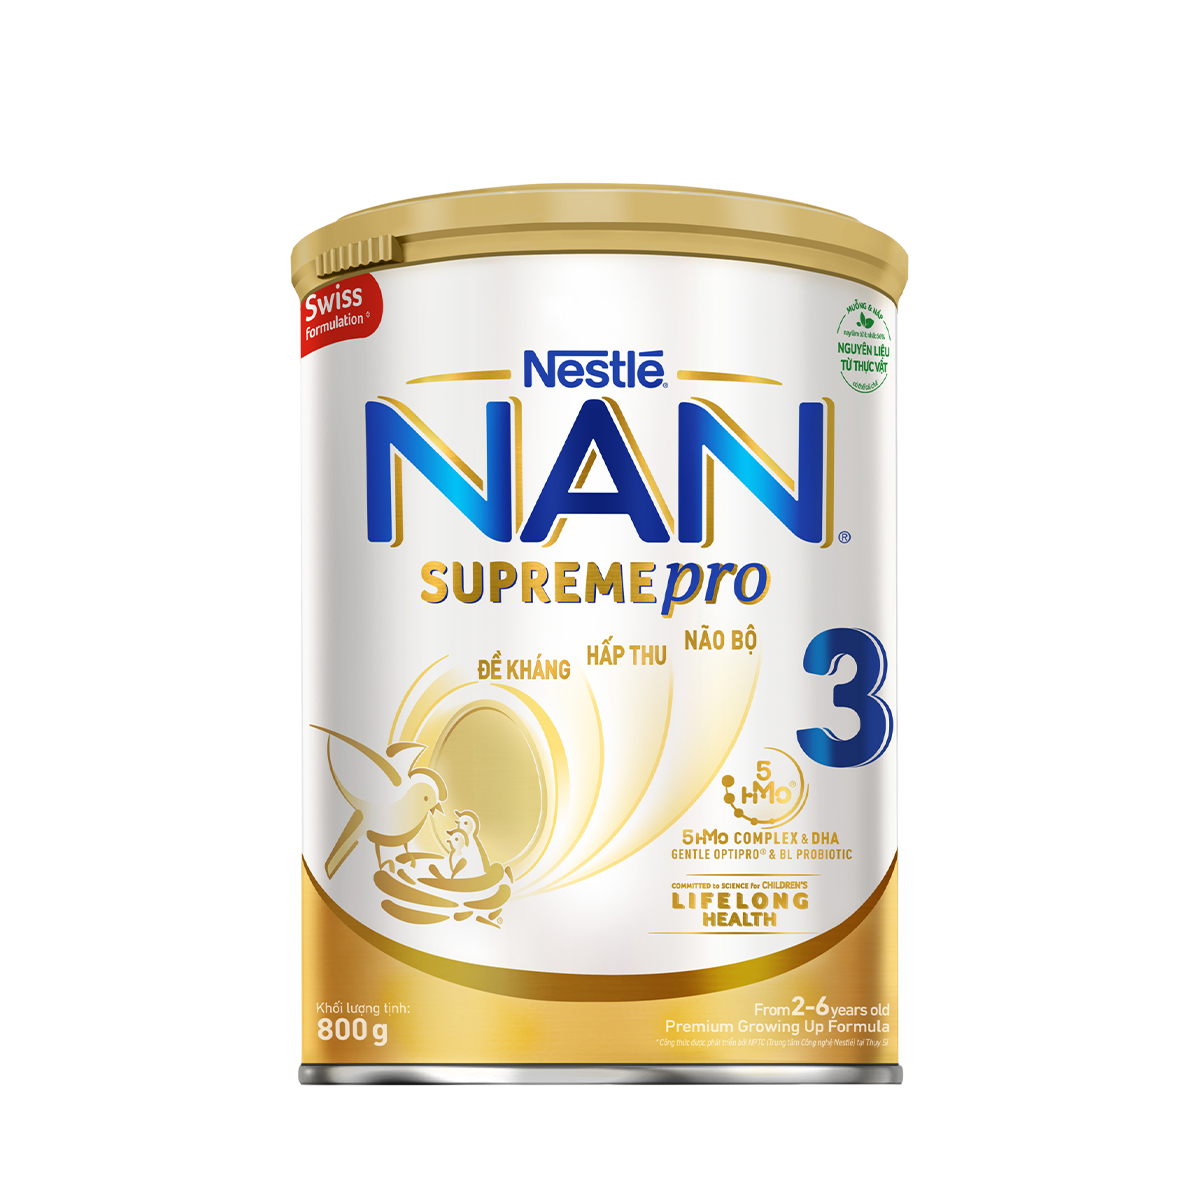 Sữa bột Nestlé NAN SupremePro 3 nhập khẩu từ Đức với 5HMO giúp tăng đề kháng, đạm Gentle Optipro giúp dễ hấp thu & ngừa nguy cơ dị ứng (chàm sữa) (2 - 6 tuổi)